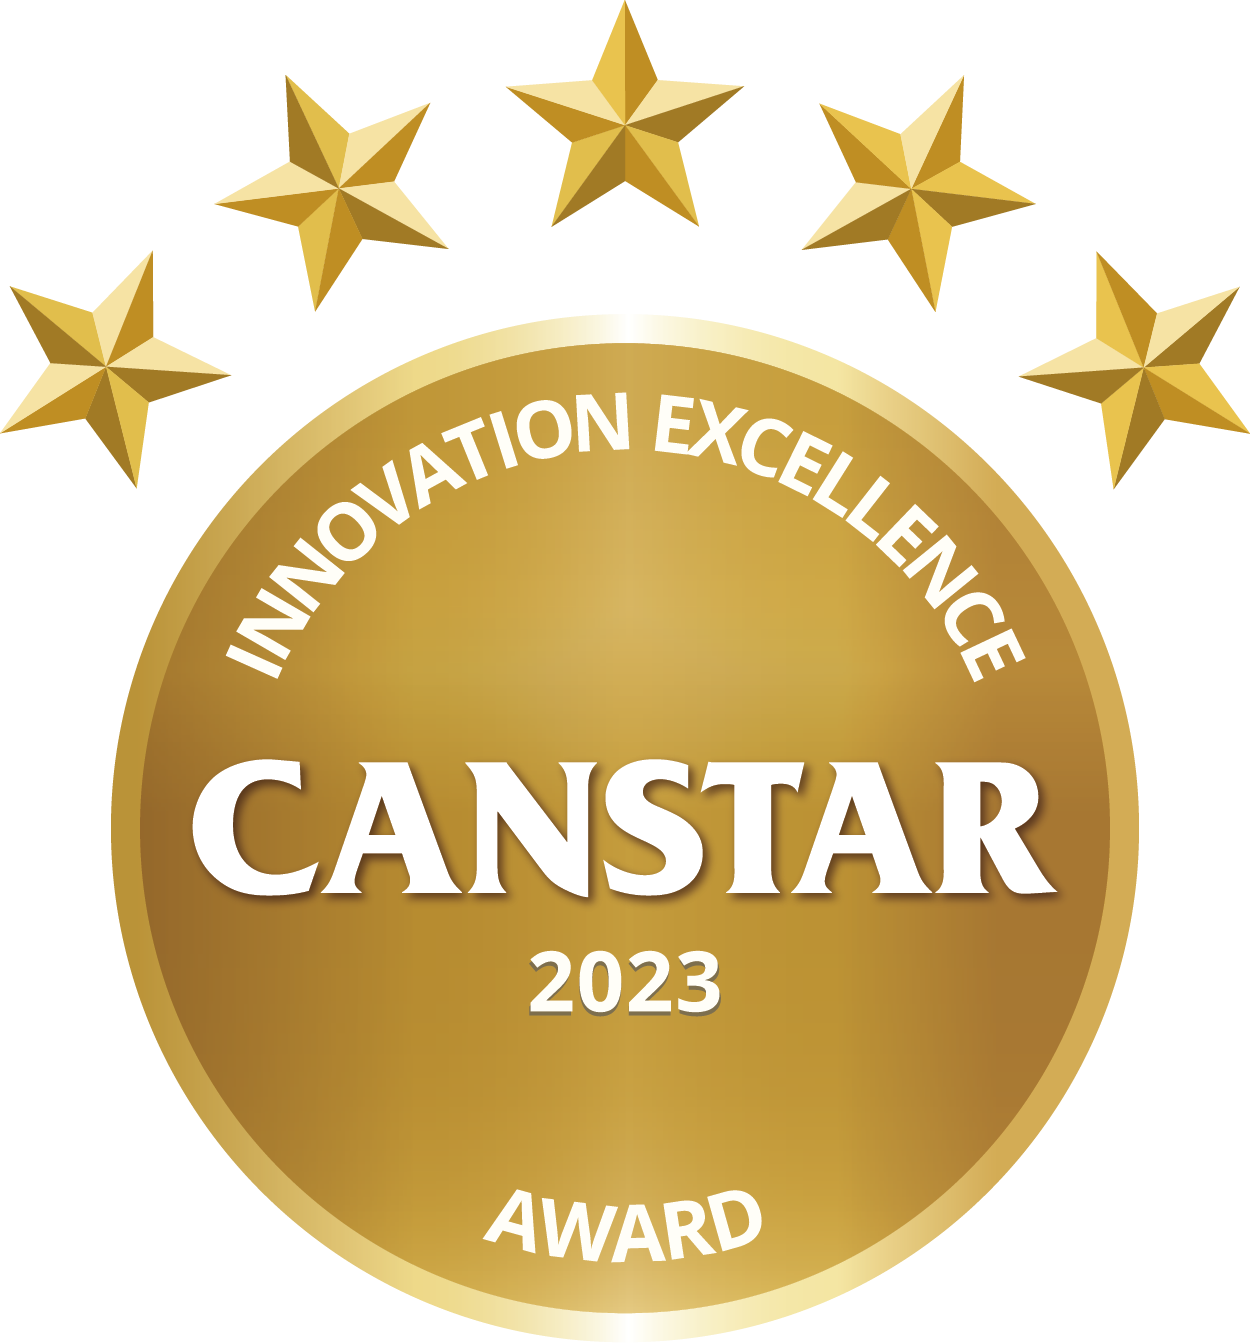 Canstar outstanding value Innovation award 2023 logo